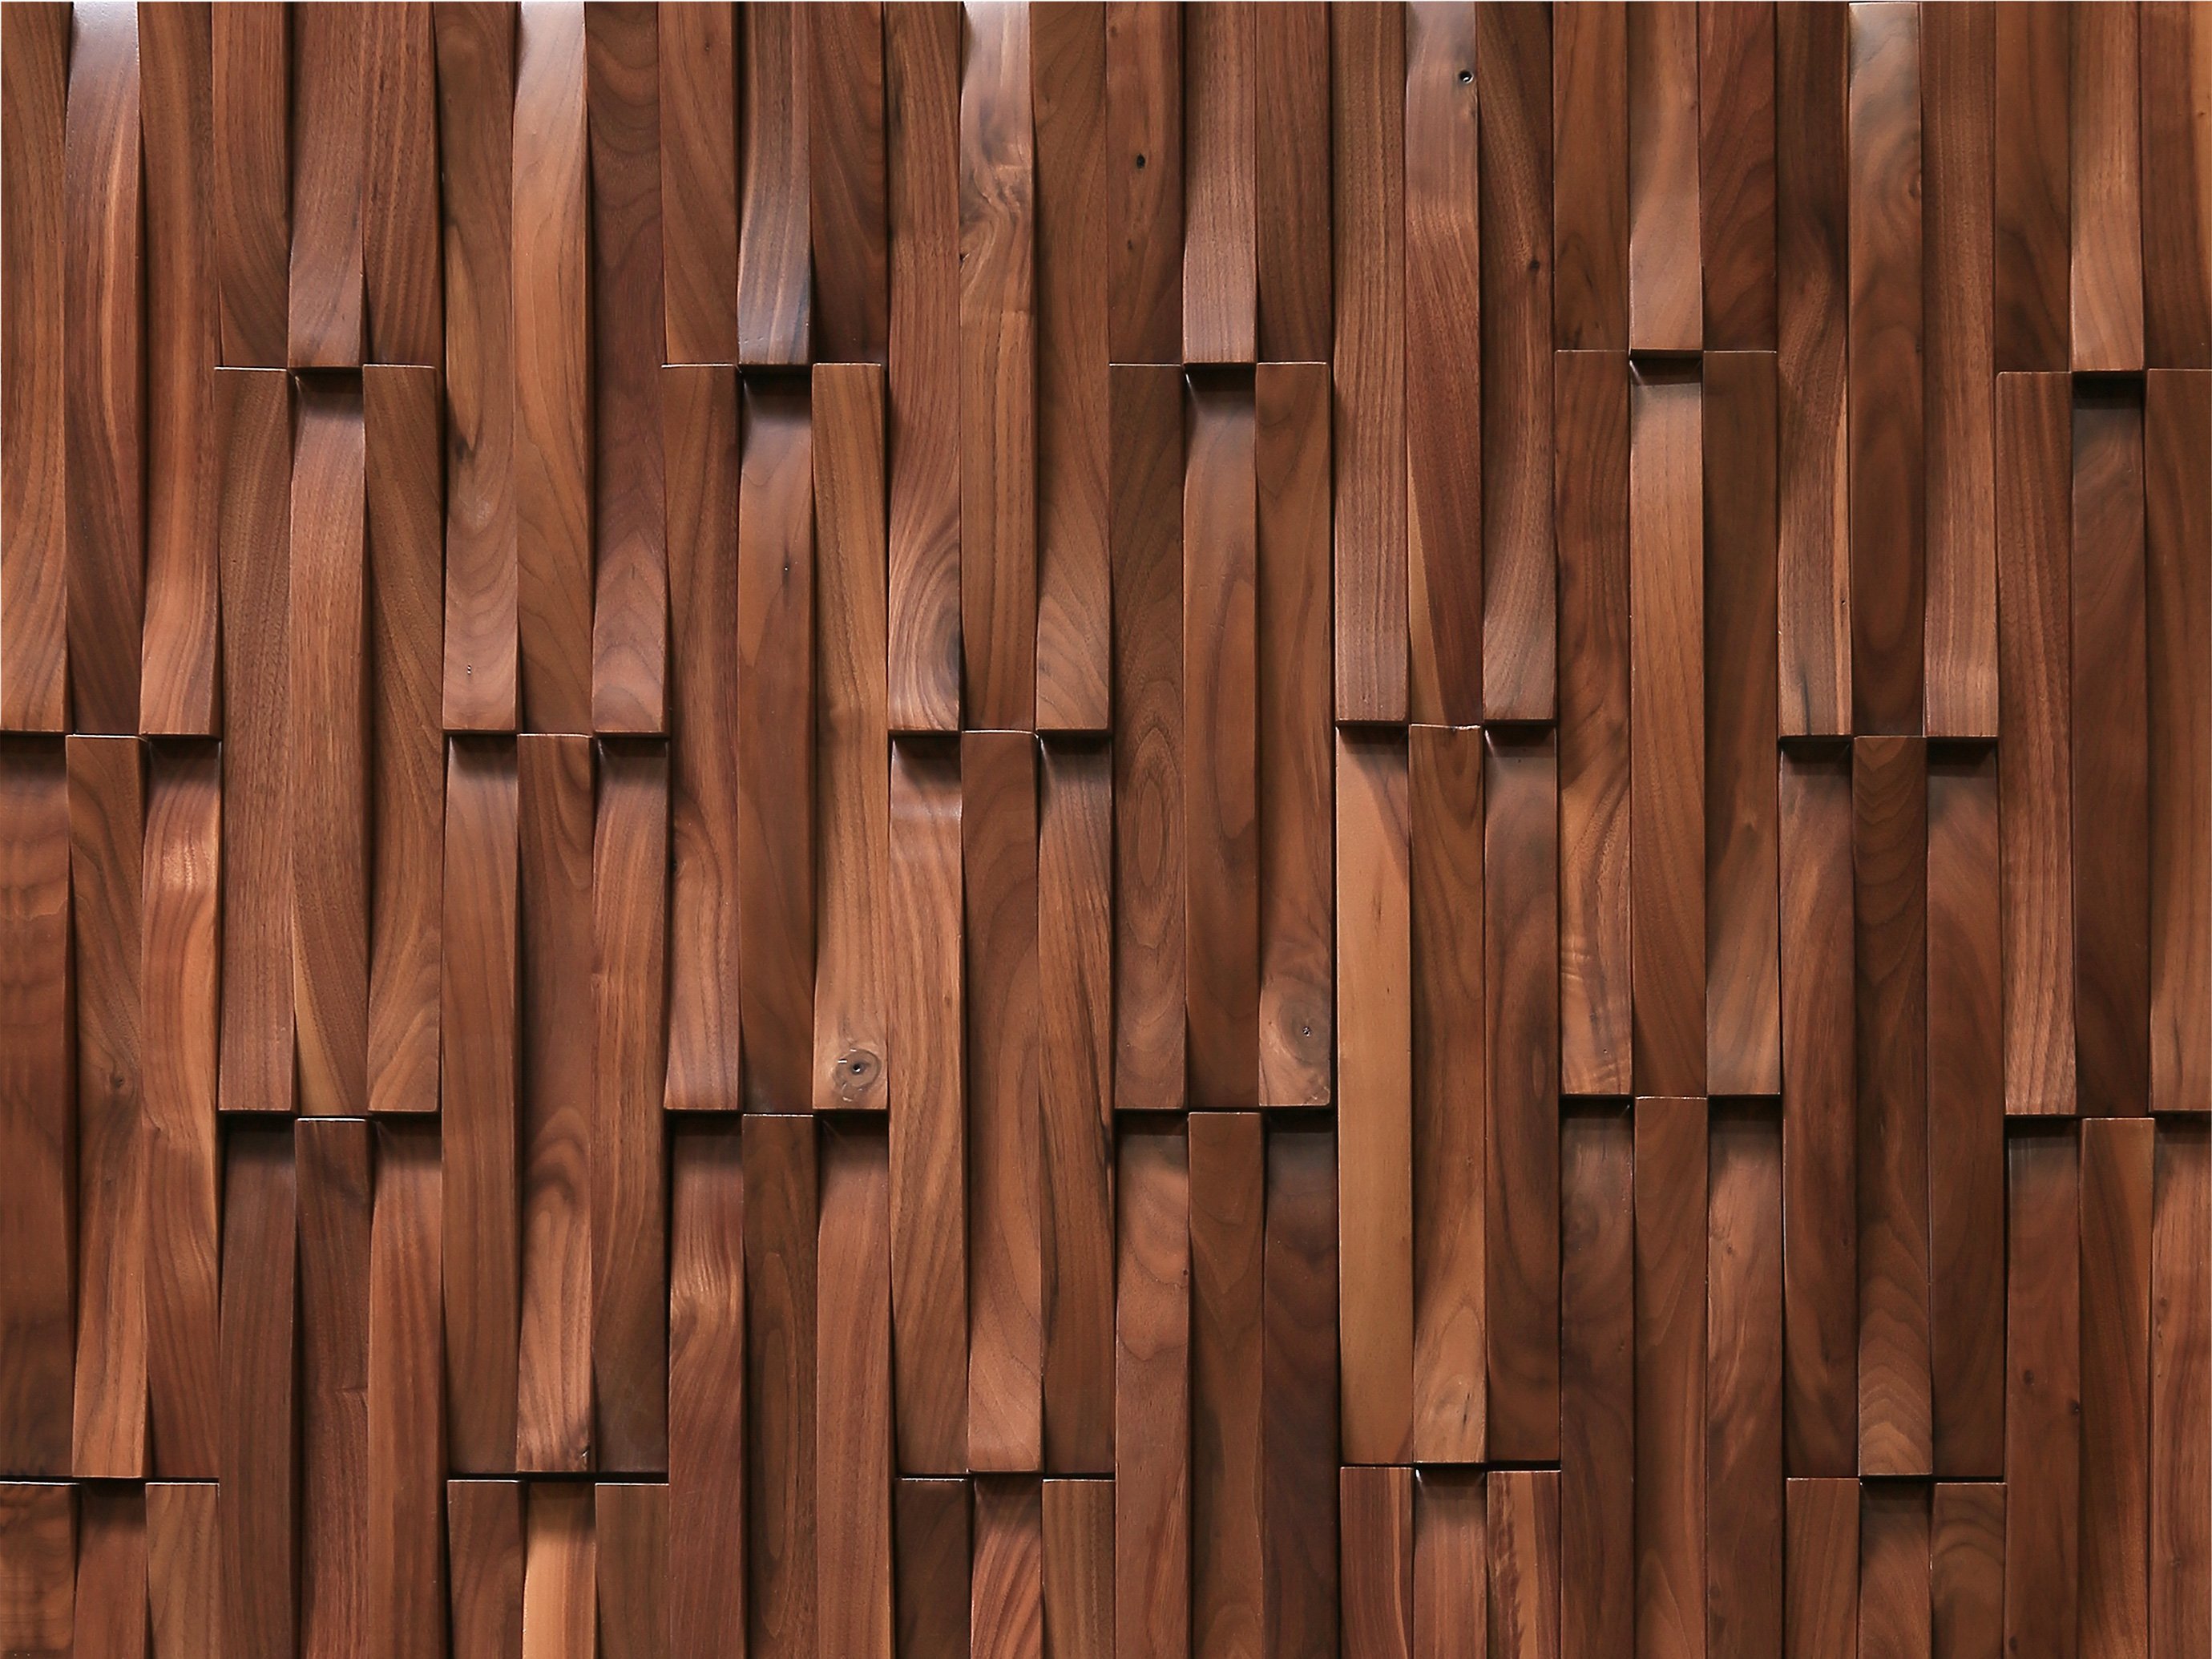 Wooden patterns. Деревянные панели. Текстурные деревянные панели. Деревянные панели текстура. Деревянный фасад текстура.